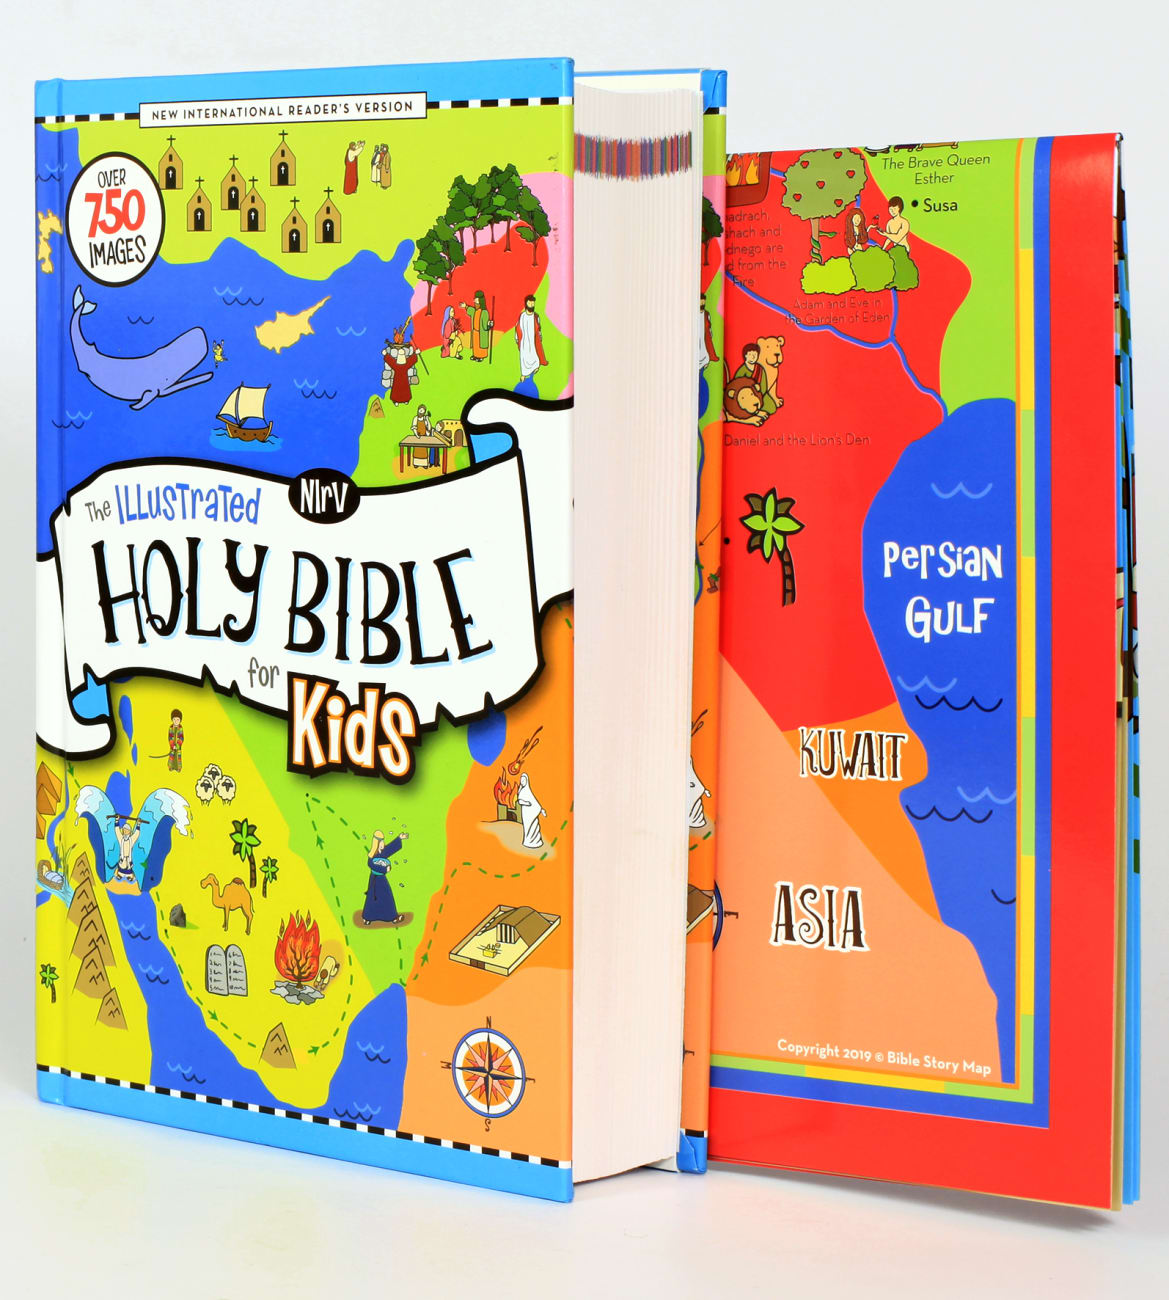 NIRV Illustrated Holy Bible For Kids Full Color Hardback